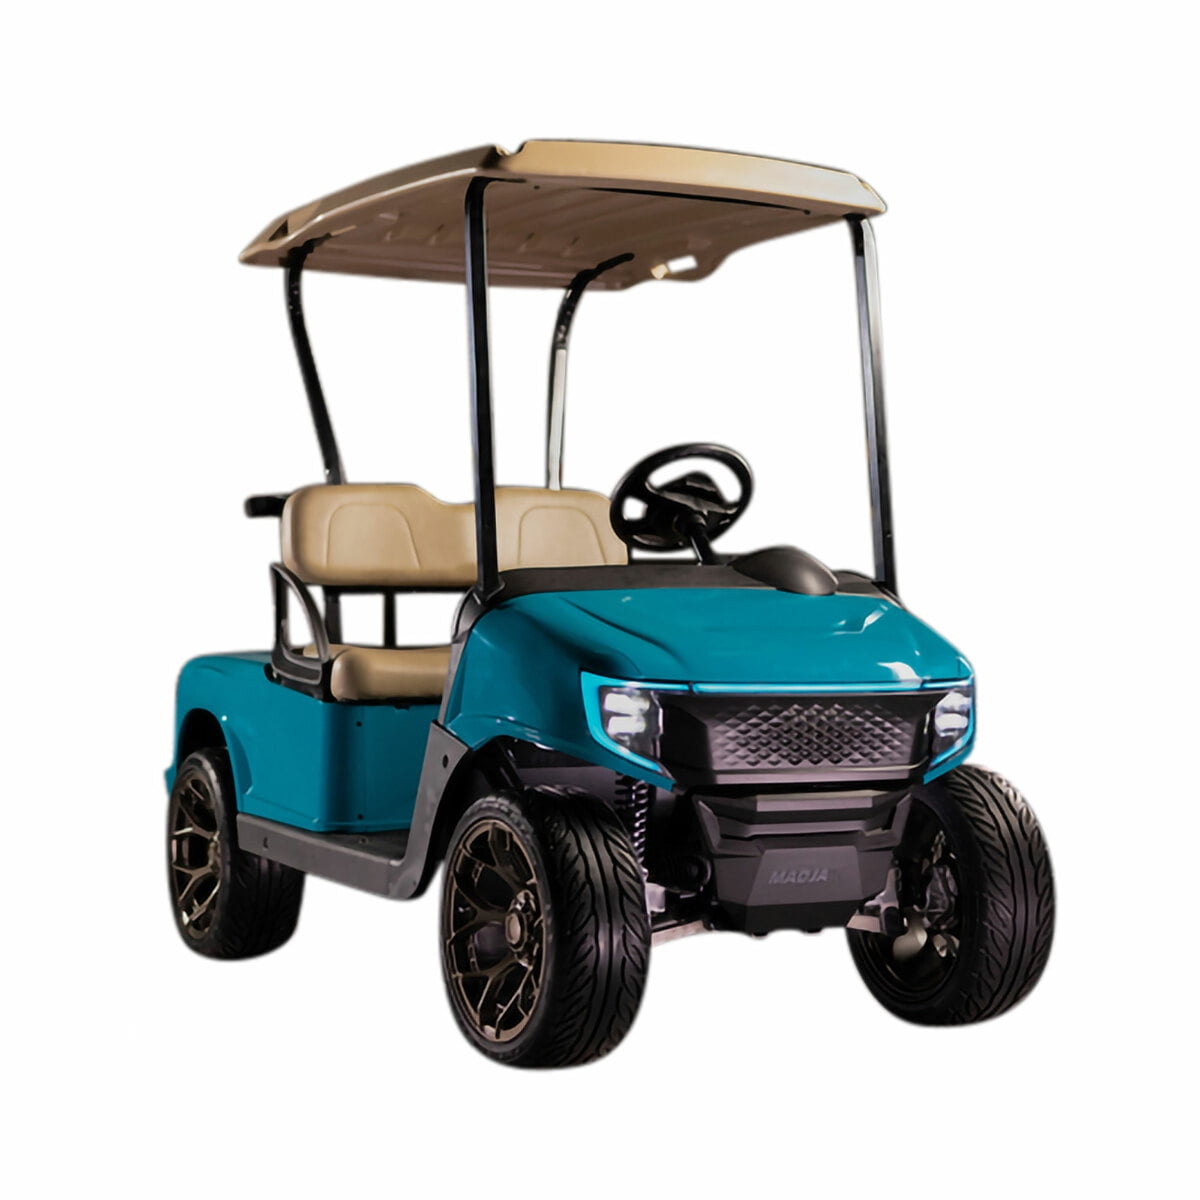 MadJax Apex Body Kit For EZGO RXV Golf Cart Aqua Fits 2008-2022 Models 